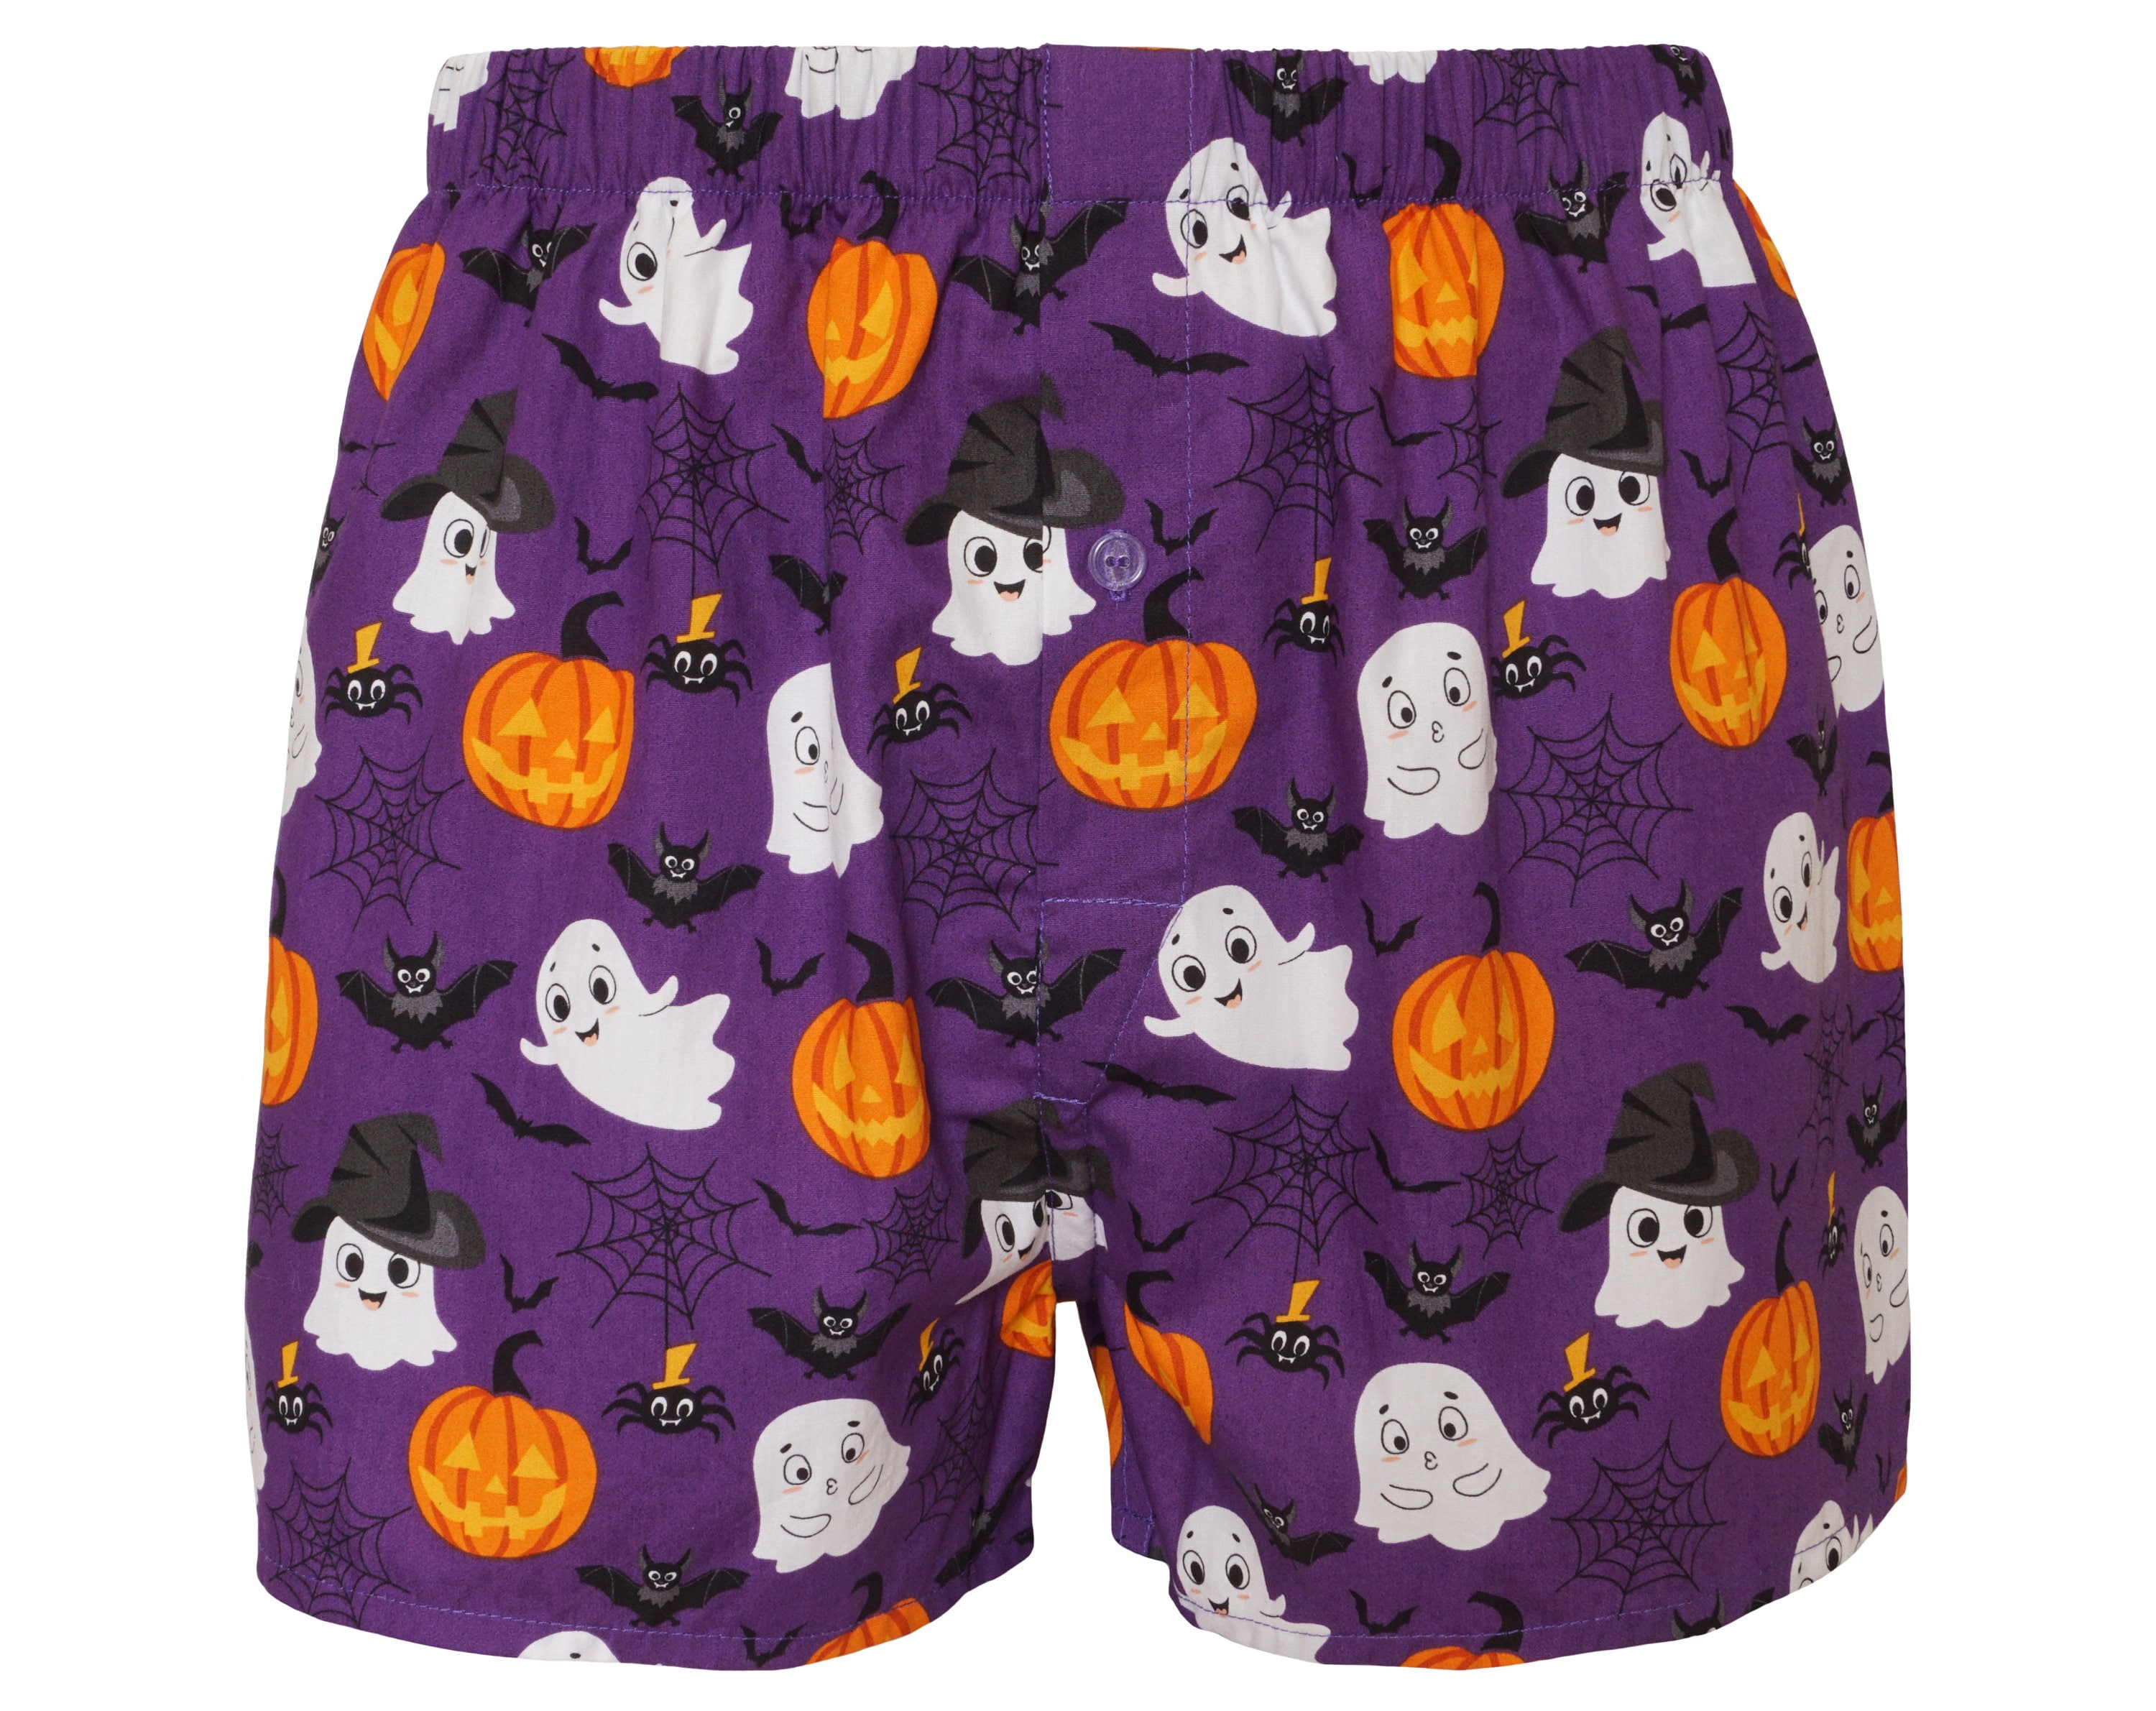 Friendly Ghost boxer shorts - pumpkin boxers - Halloween underwear